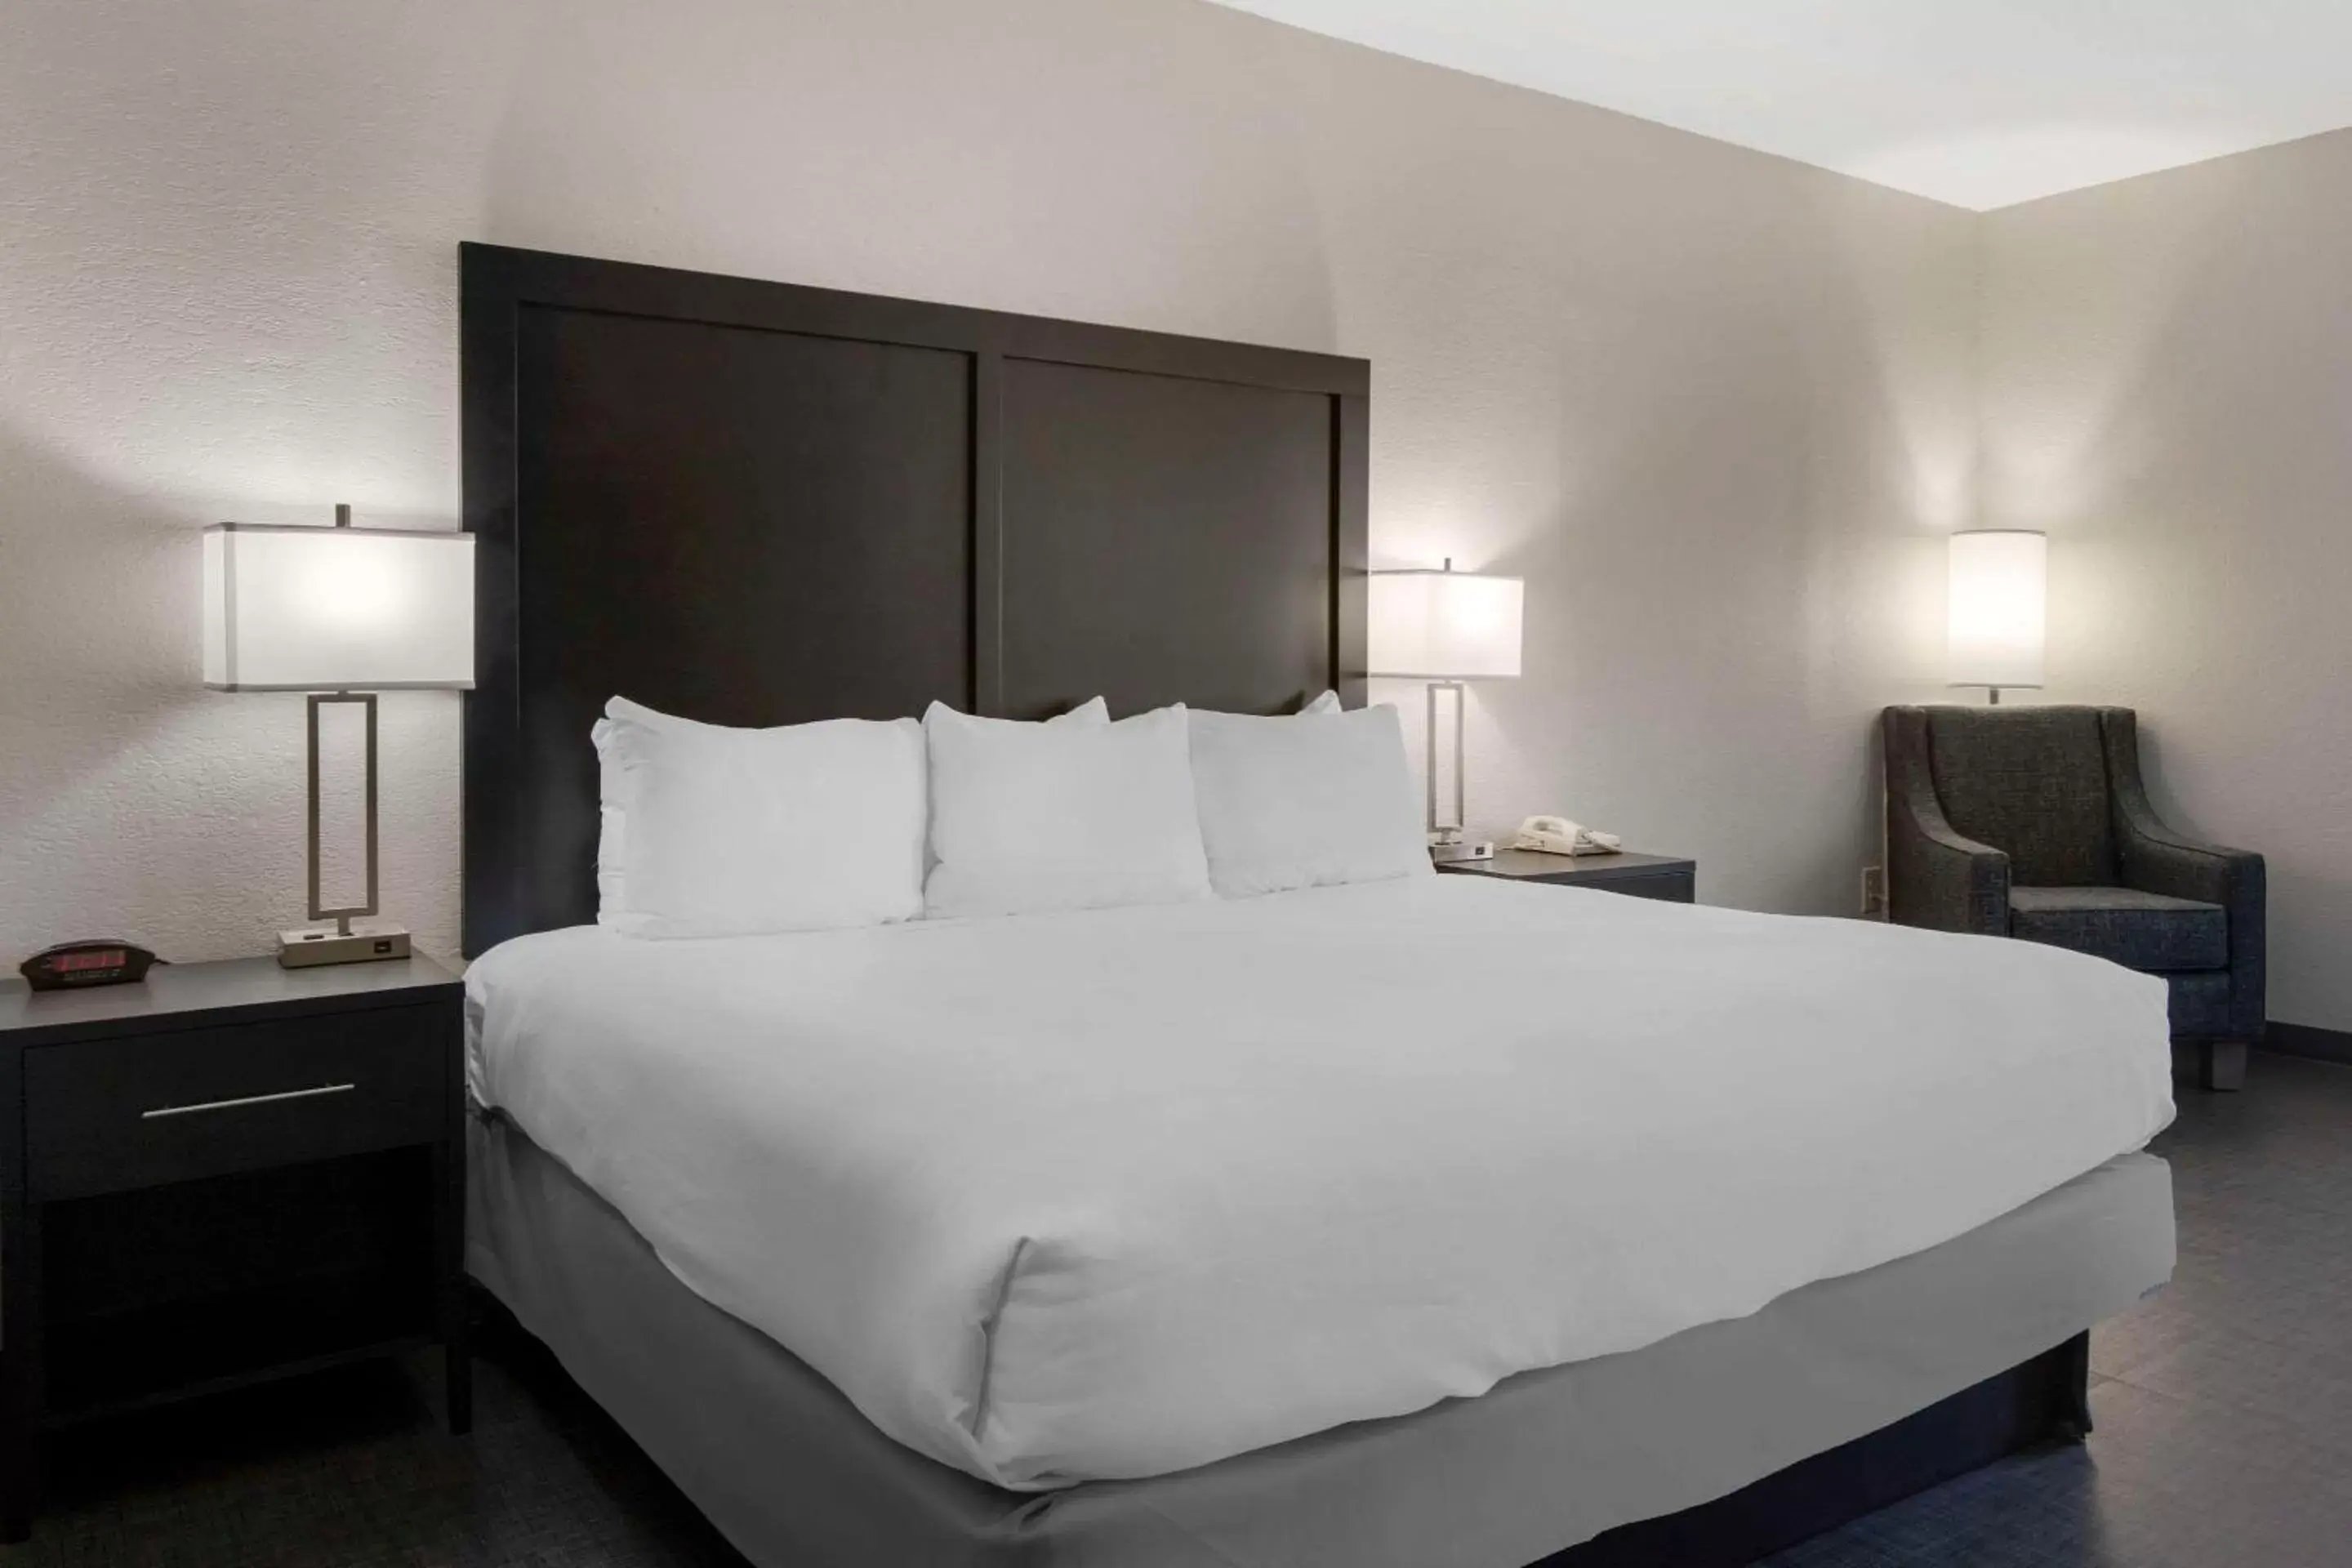 Bedroom, Bed in Comfort Inn & Suites Greer - Greenville